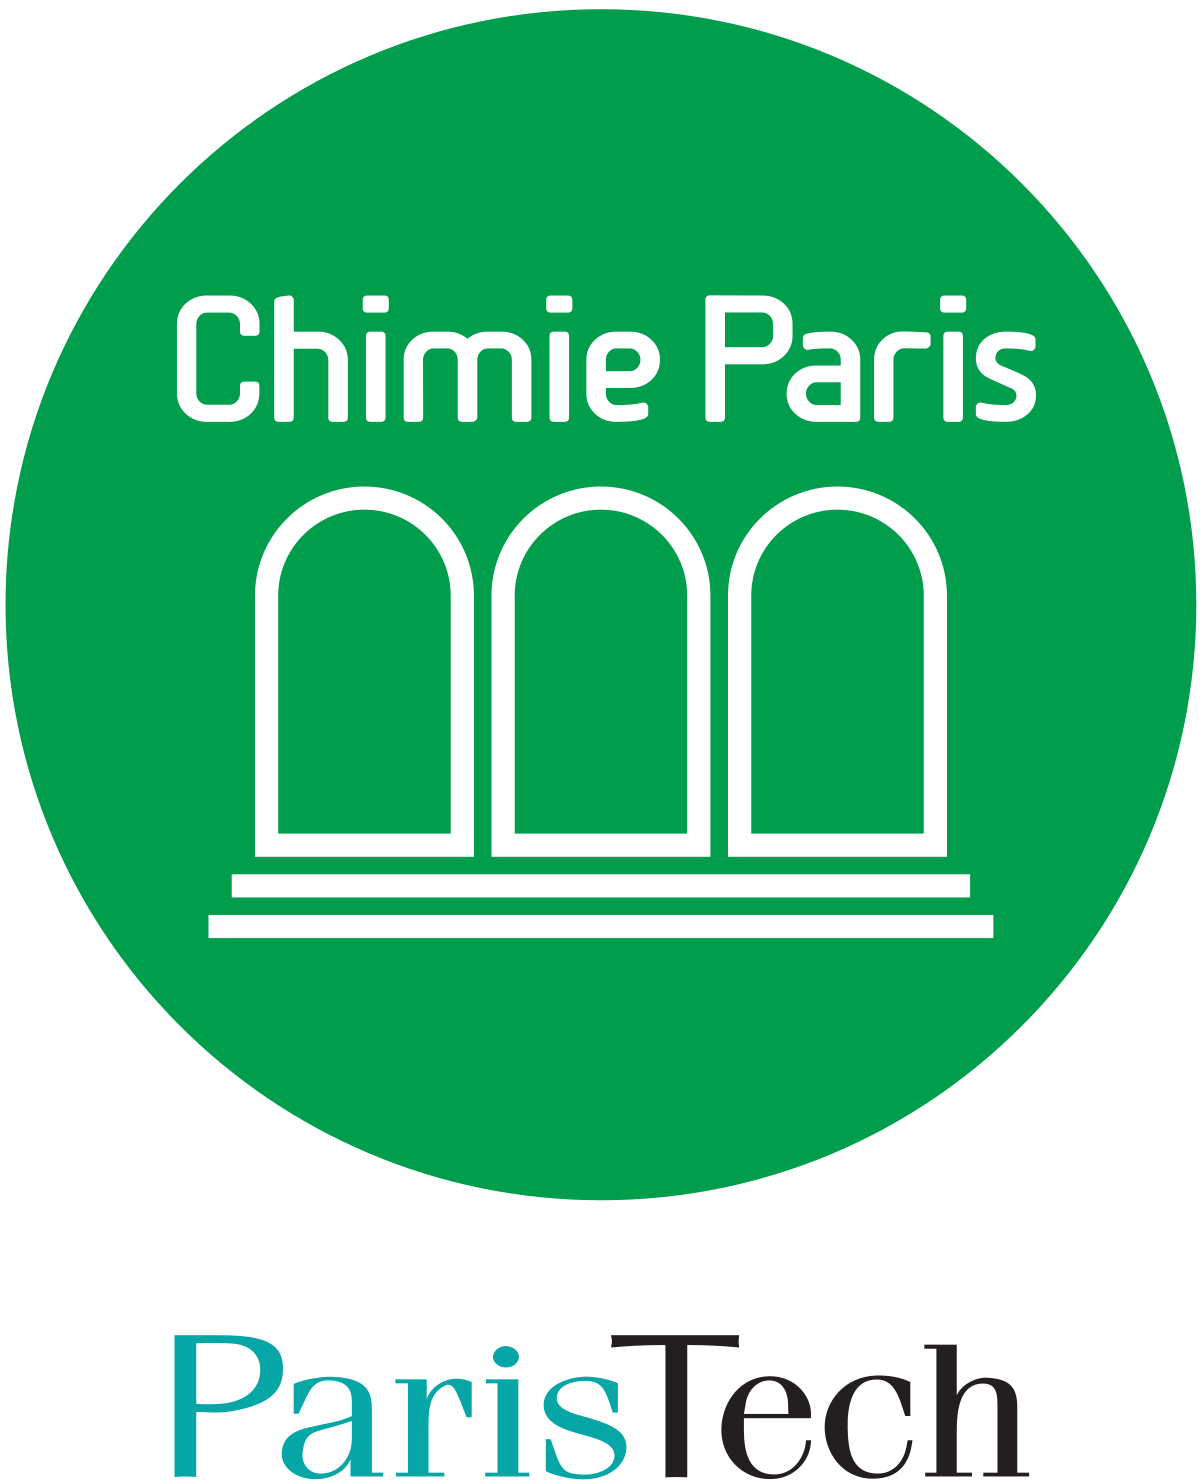 Chimie Paristech Wikipedia